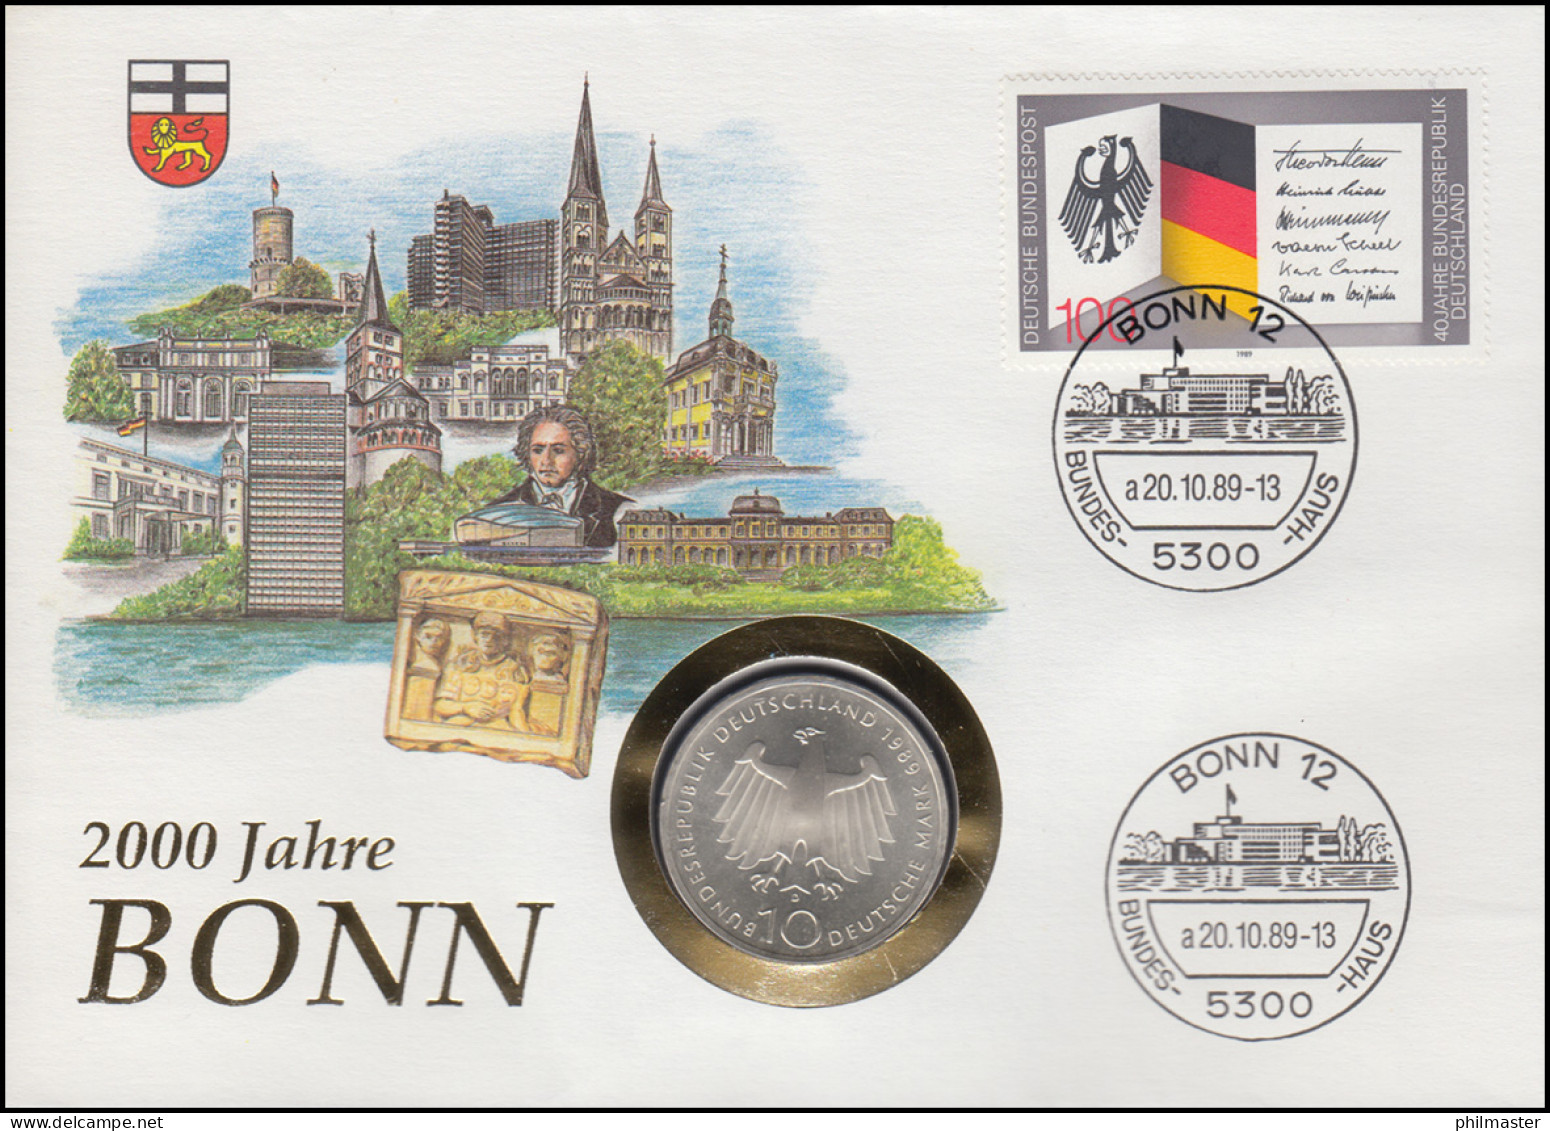 Numisbrief 2000 Jahre Bonn, 10 DM / 100 Pf., ESST Bonn 20.10.1989 - Enveloppes Numismatiques